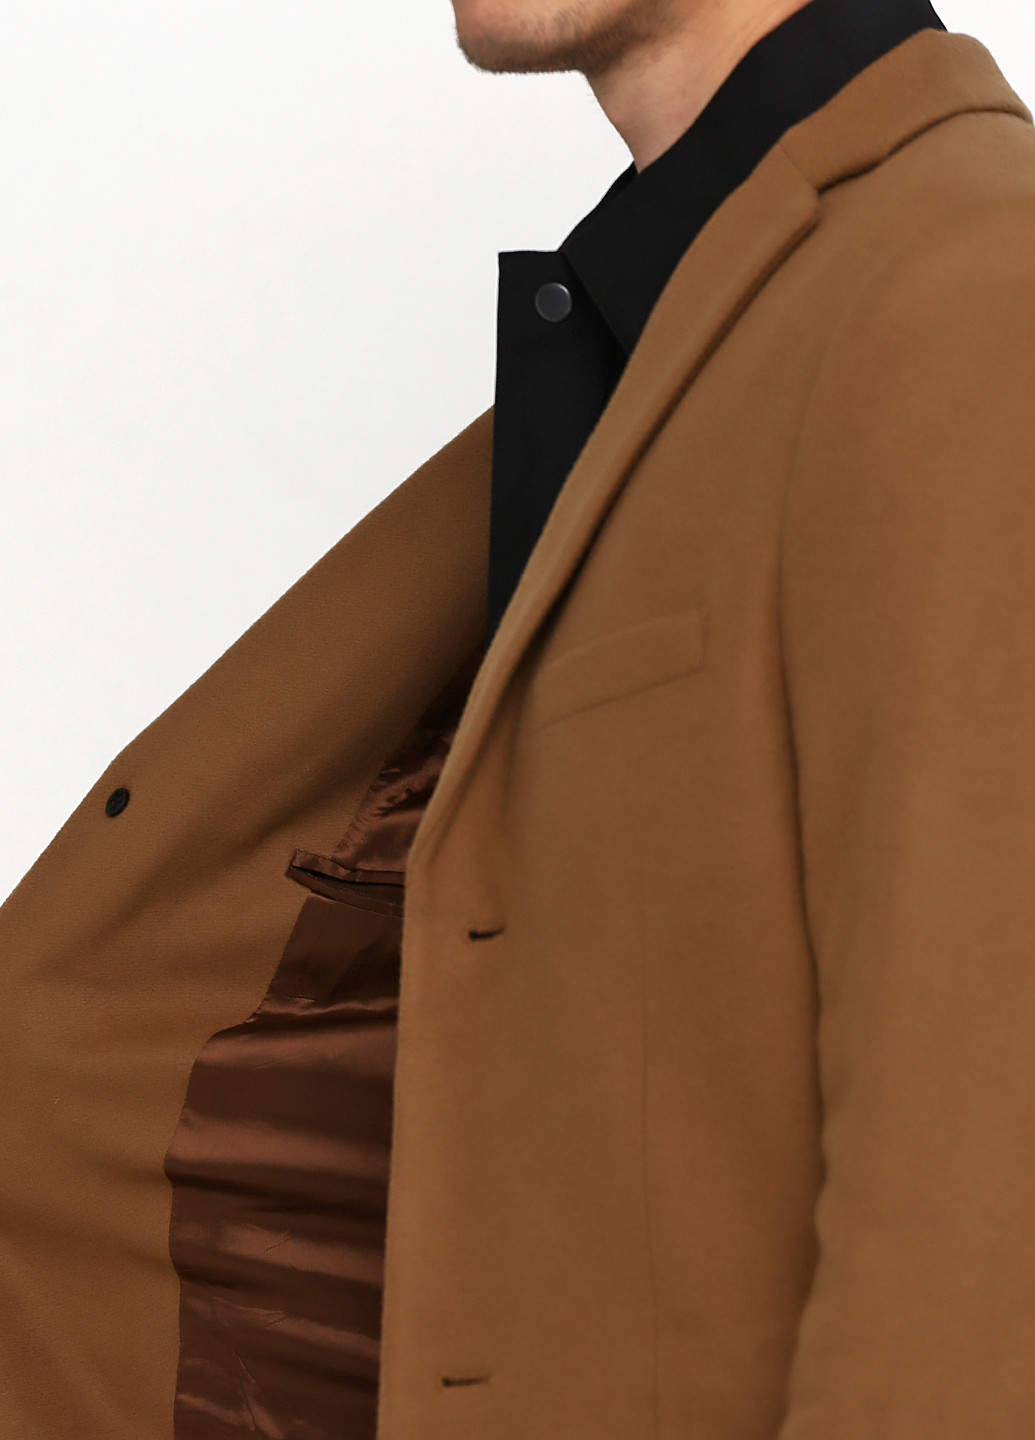 Светло-коричневое демисезонное Пальто H&M